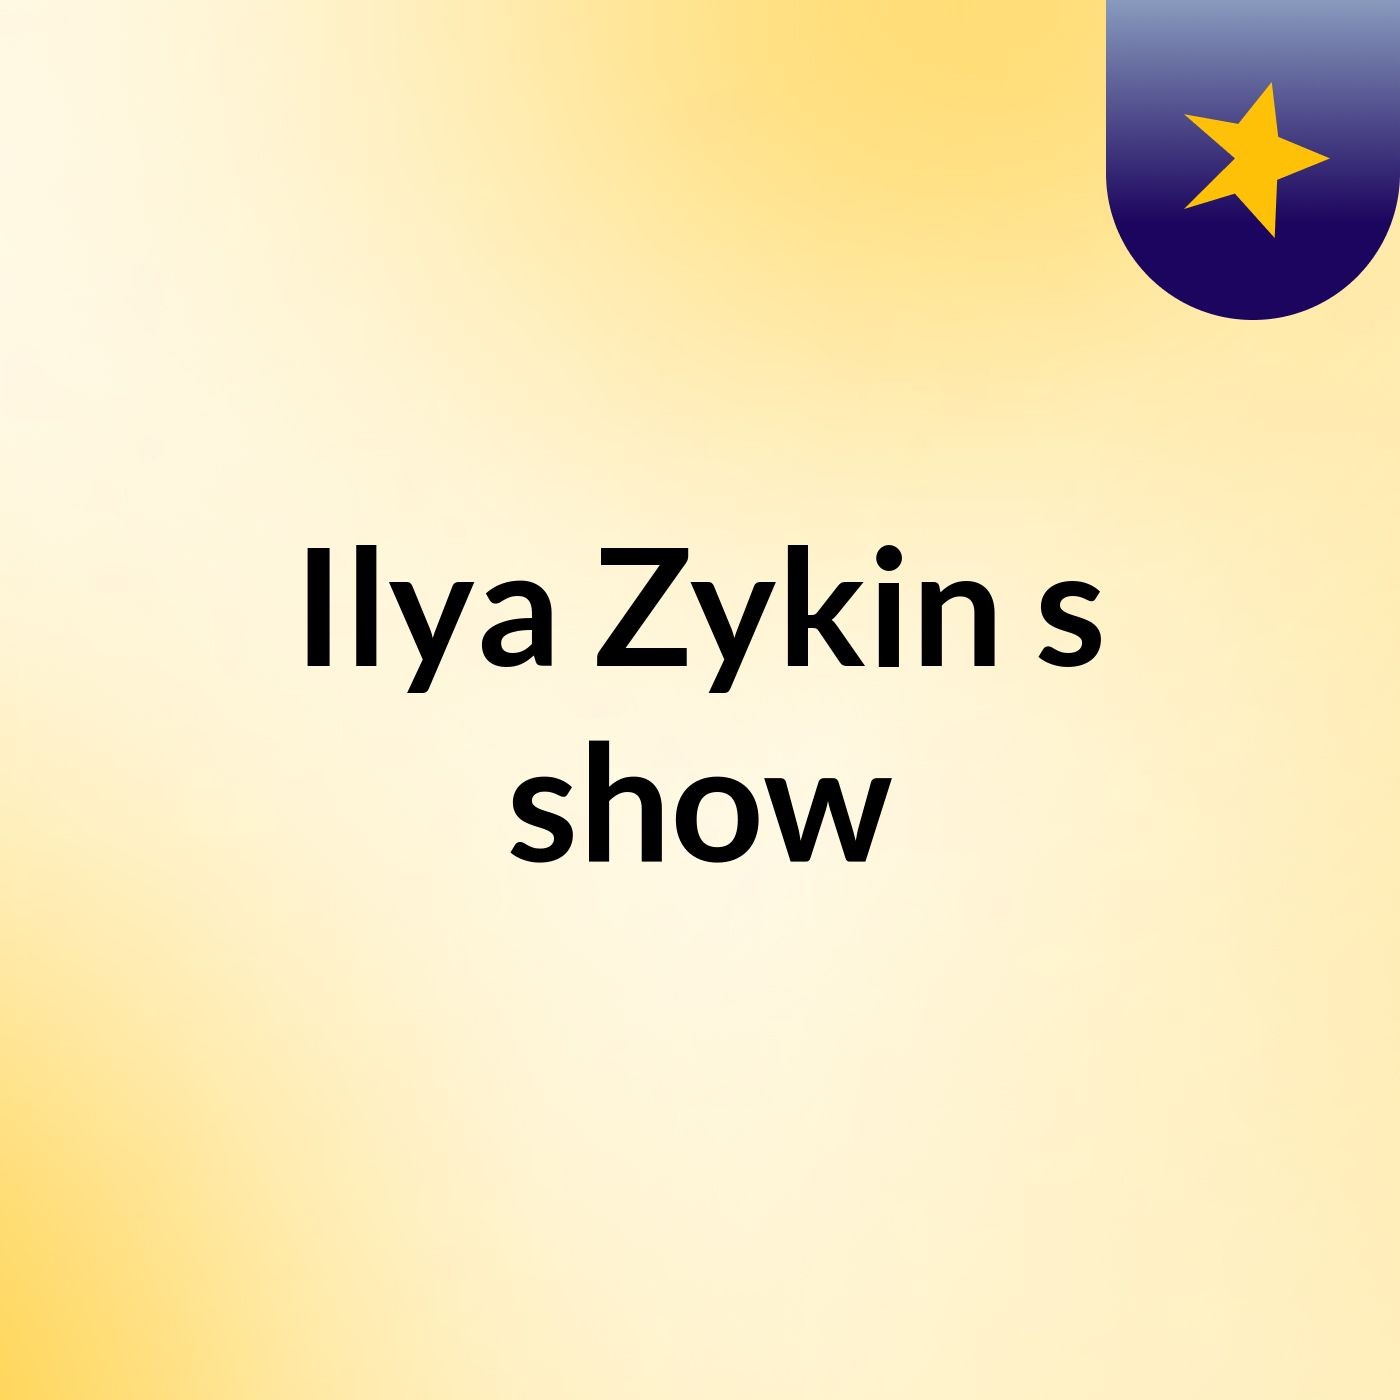 Ilya Zykin's show